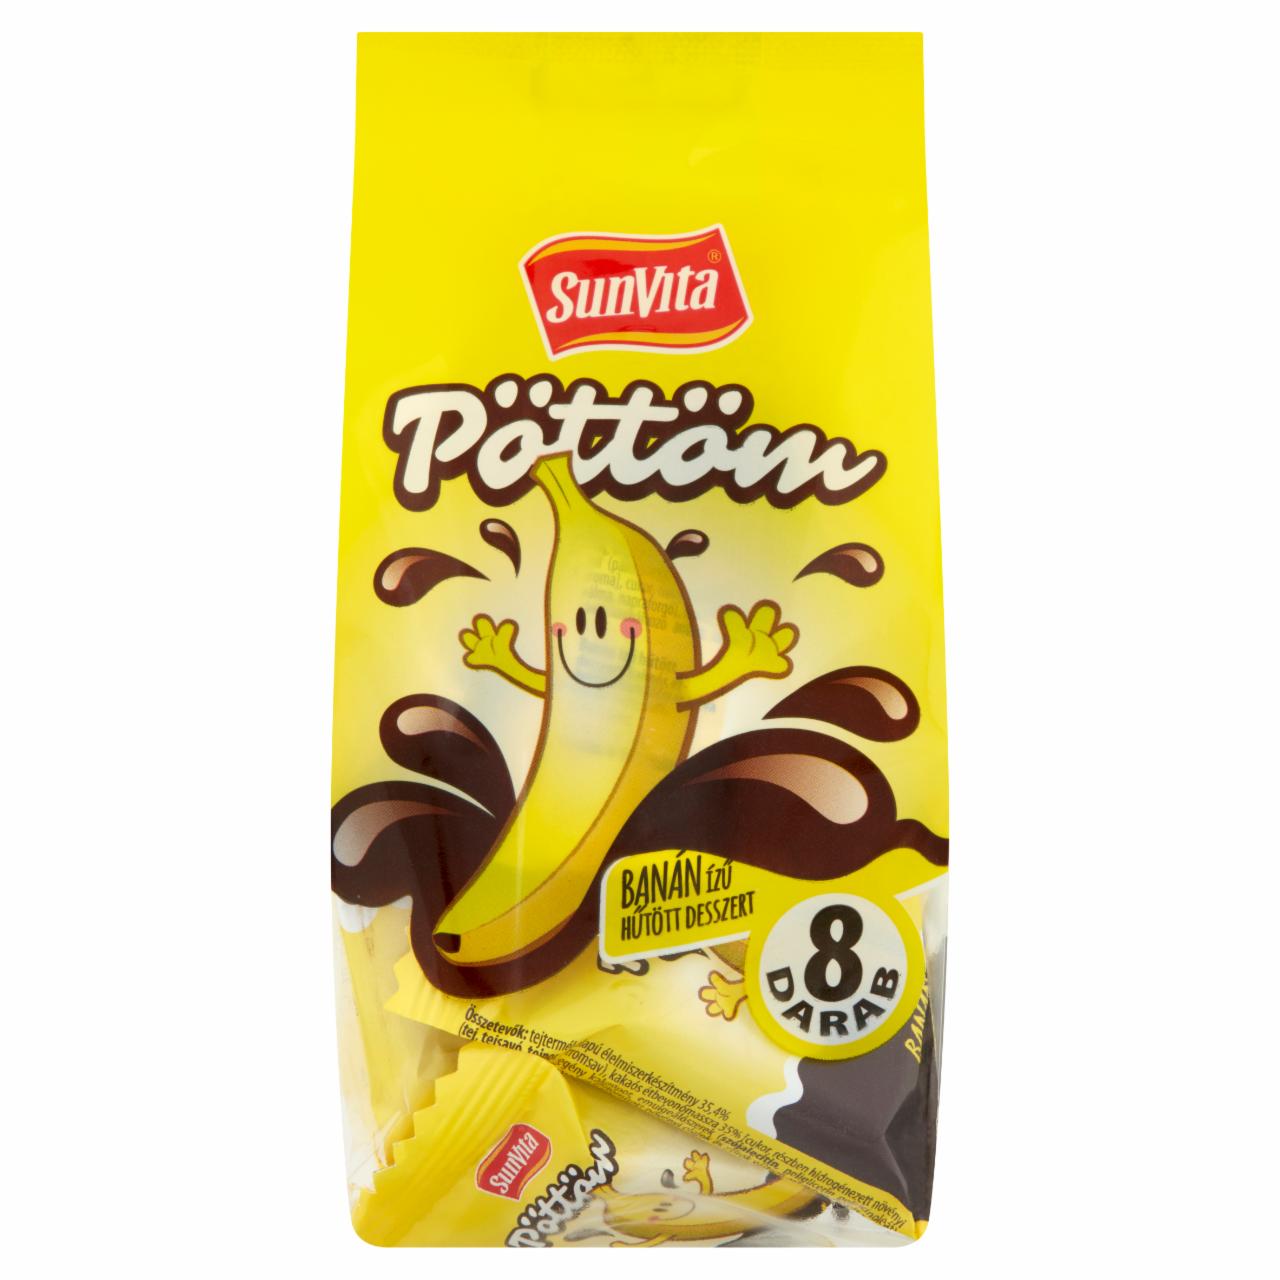 Képek - SunVita Pöttöm banán ízű hűtött desszert 8 x 15 g (120 g)